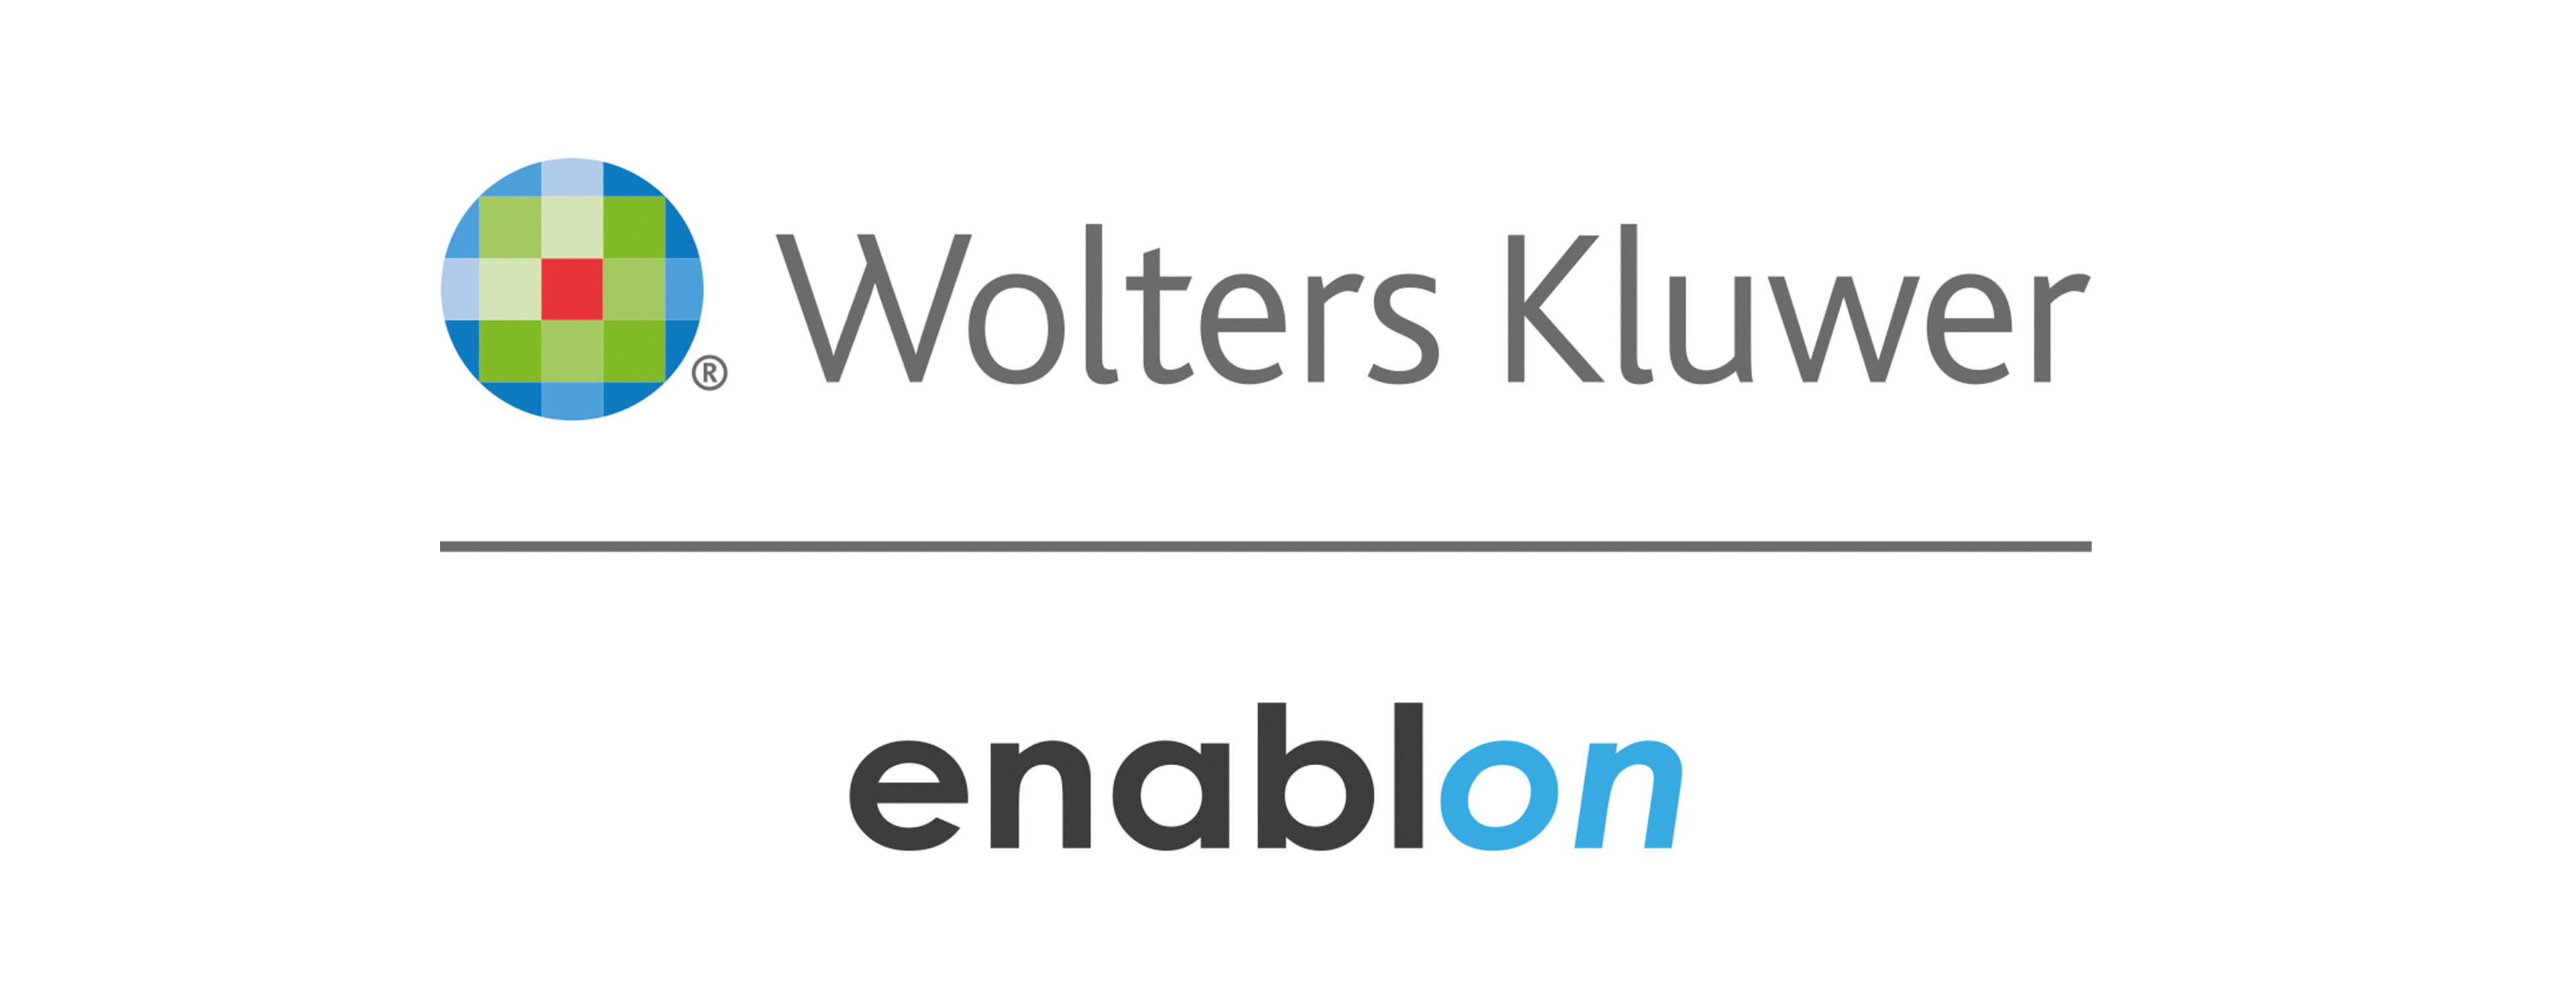             Logo Enablon        